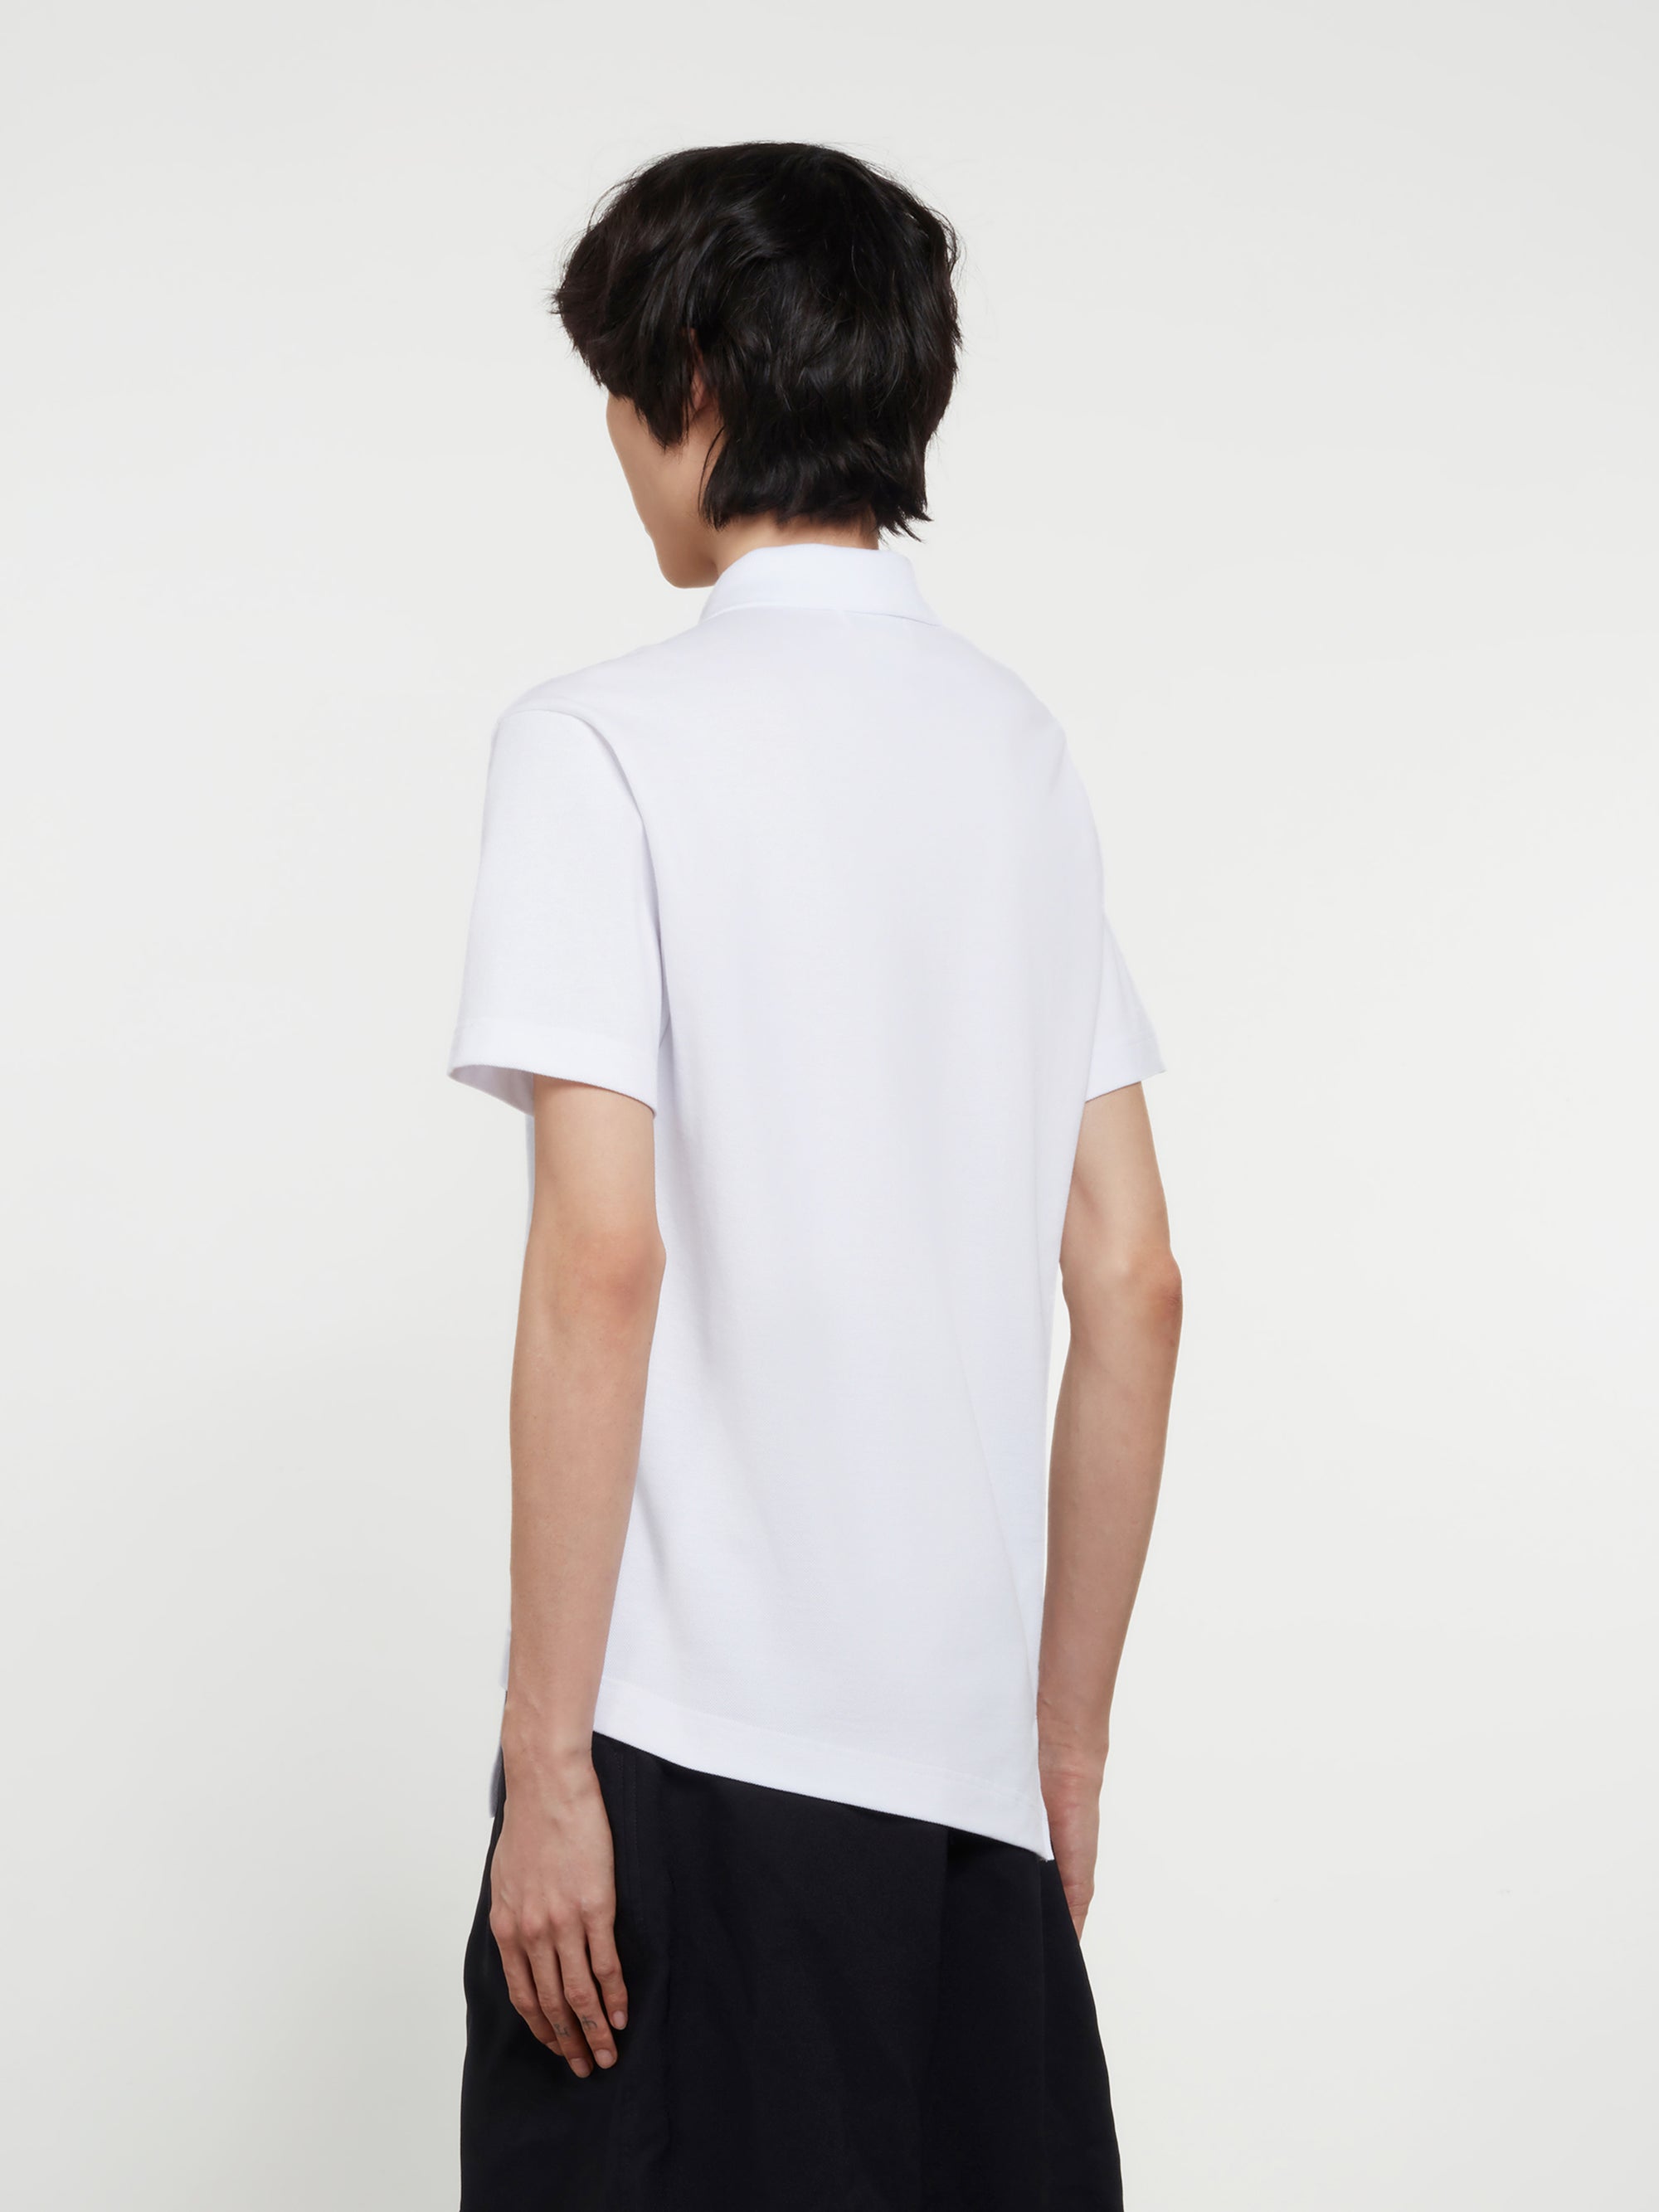 CDG Shirt - Lacoste Men's Asymmetric Polo Shirt - (White) view 3